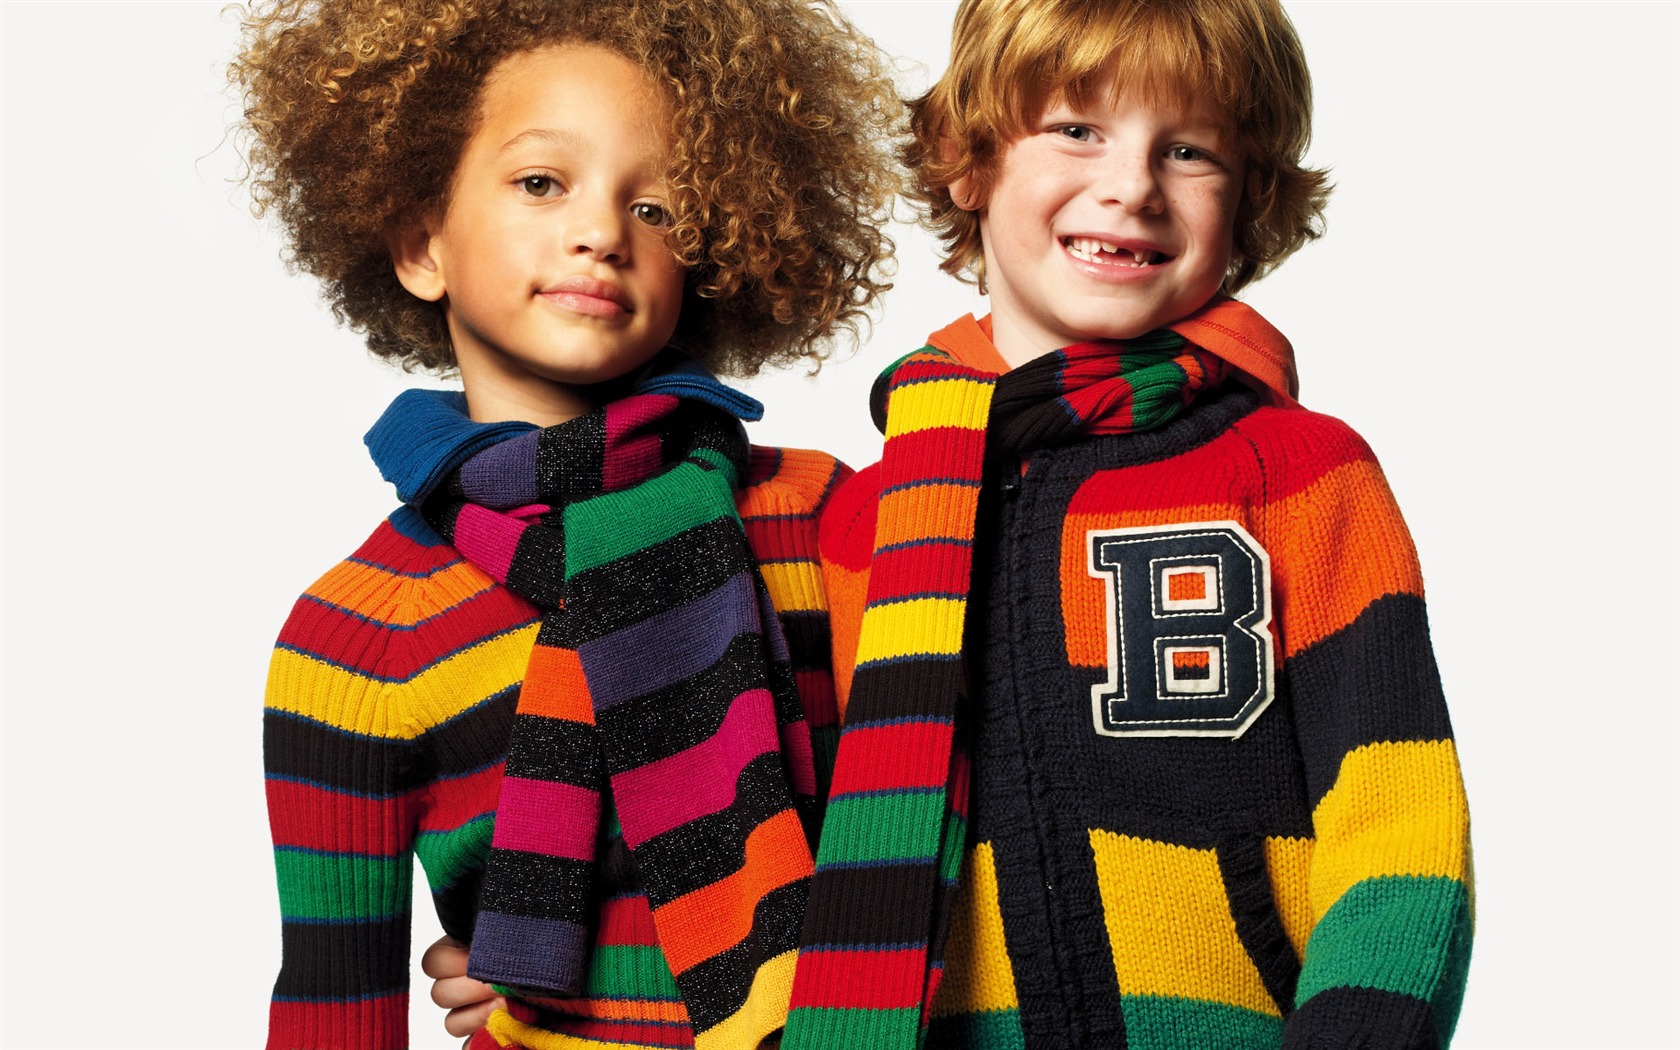 Los niños de colores de moda de papel tapiz (1) #14 - 1680x1050